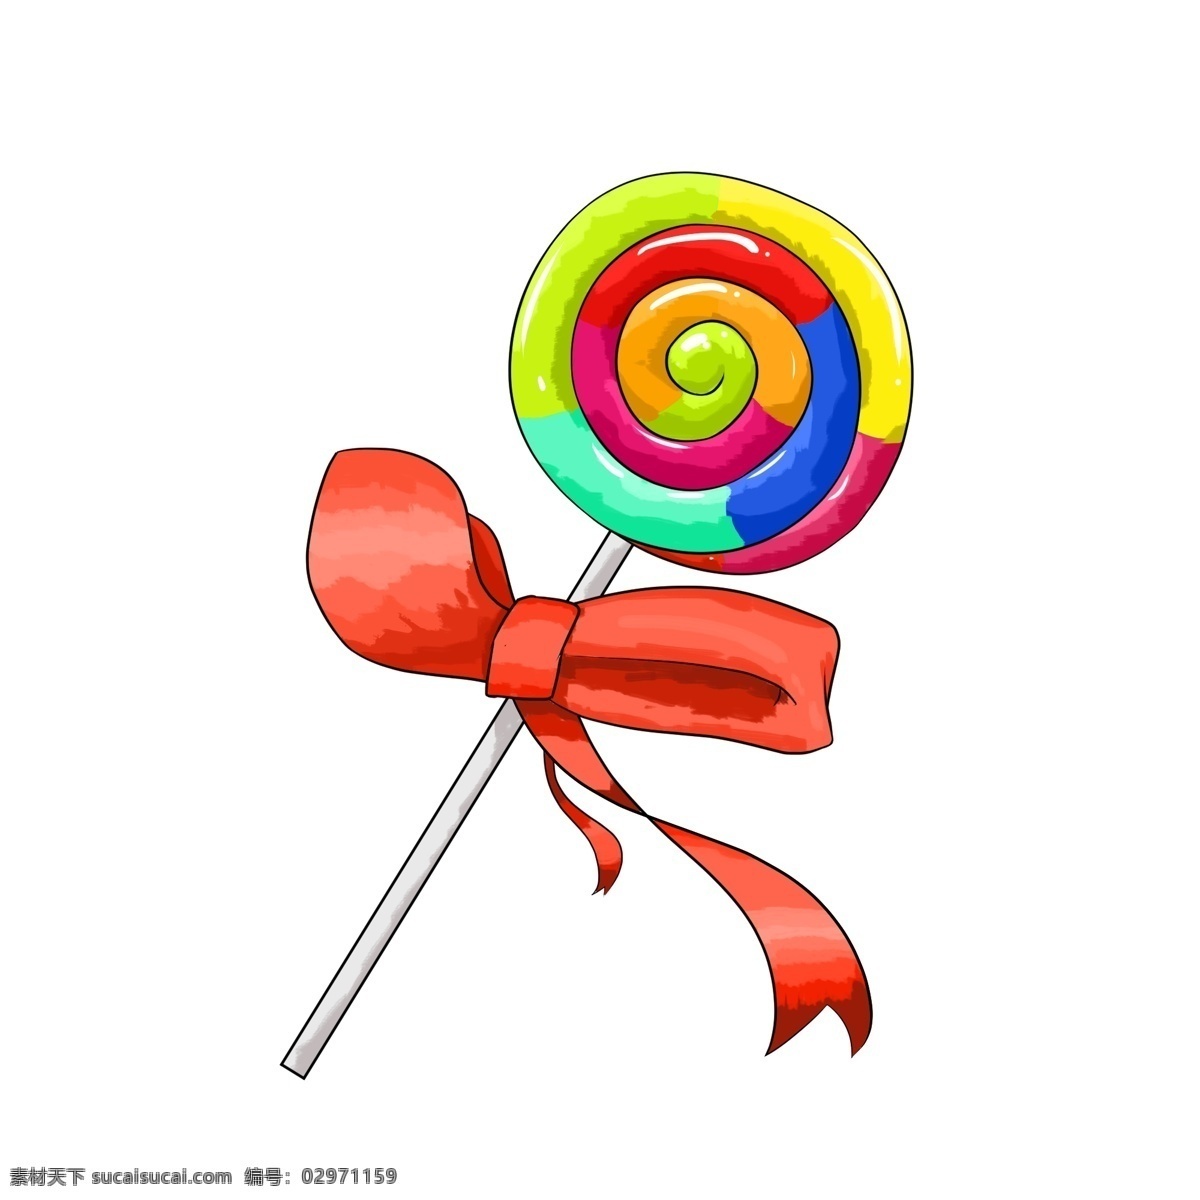 彩色 棒棒糖 插画 彩色的棒棒糖 圆形棒棒糖 漂亮的棒棒糖 立体棒棒糖 红色的蝴蝶结 蝴蝶结装饰